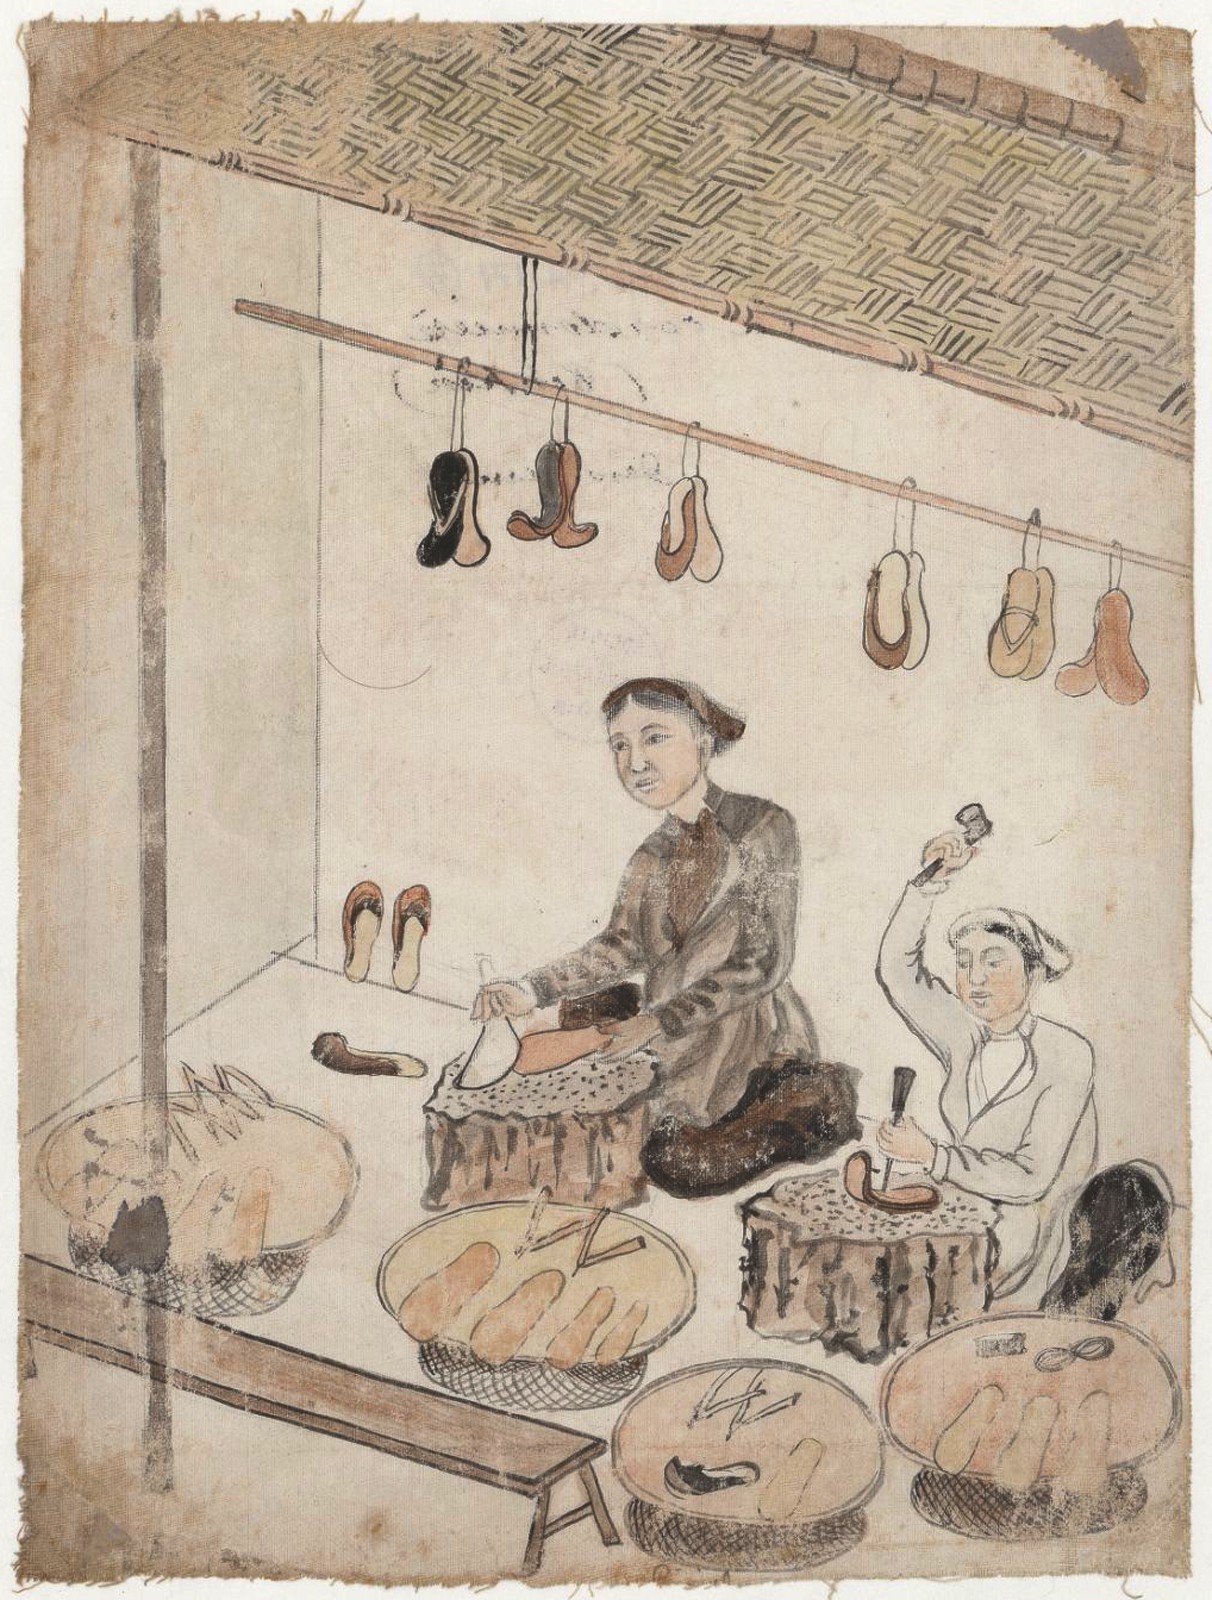 Phong trào Thái Bình Thiên Quốc qua tranh vẽ xưa  Hình Ảnh Lịch Sử  Bộ  sưu tập Hình Ảnh Lịch Sử Việt Nam và Thế Giới